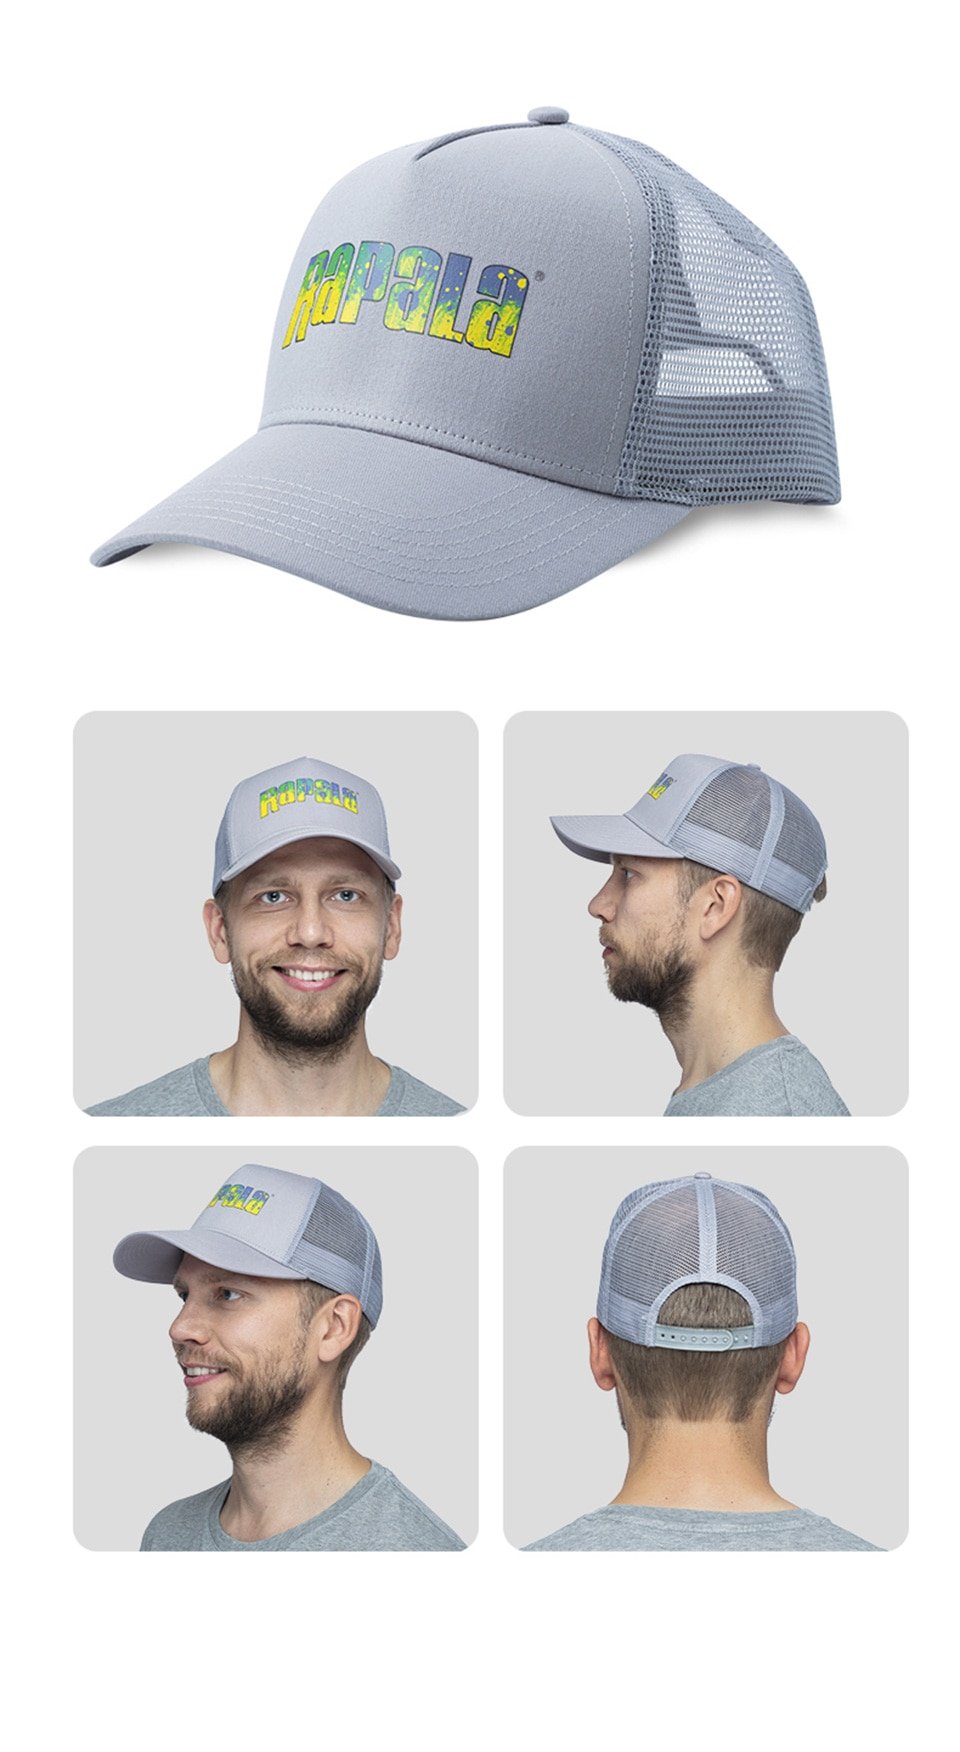 Sombrero de pesca RAPALA, gorra de pesca transpirable/deportiva al aire libre, gorra de béisbol y Golf ajustable, equipo de pesca, novedad de 2021